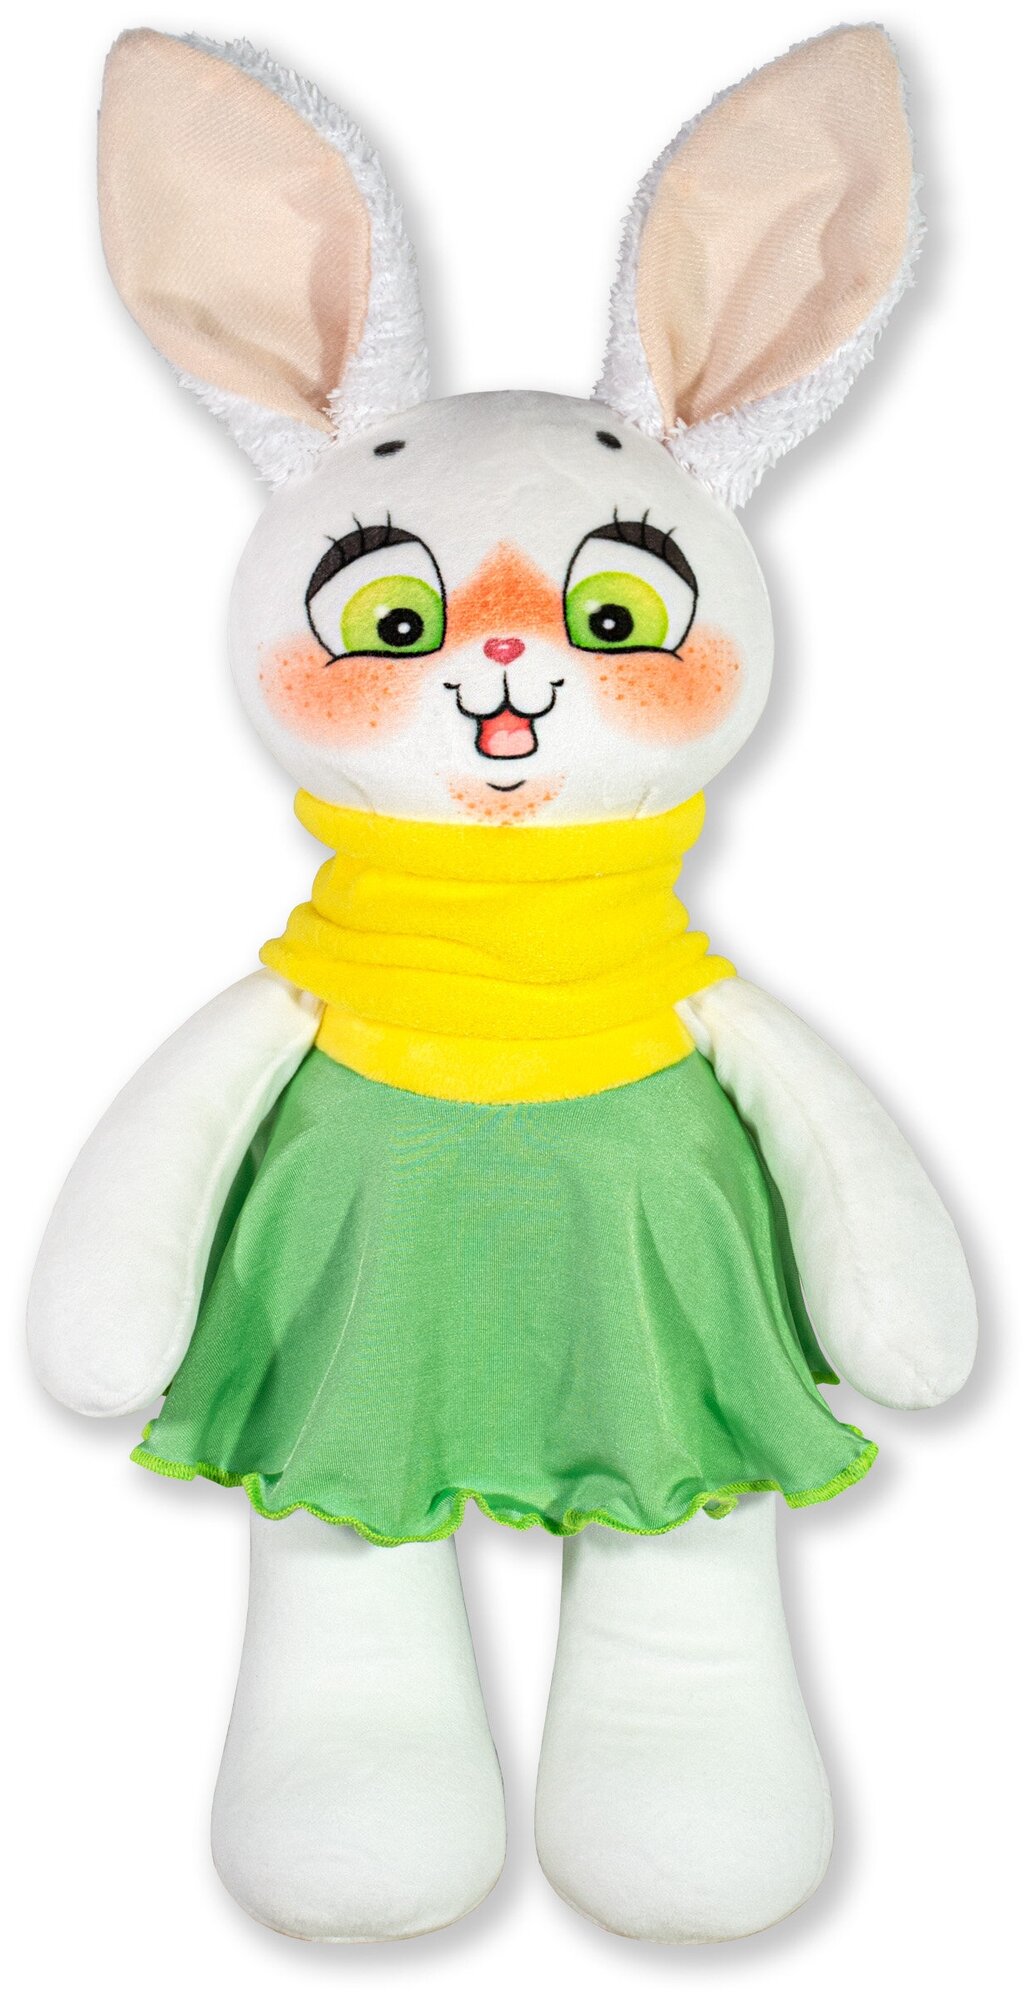 Мягкая игрушка-антистресс Штучки, к которым тянутся ручки Зайка Лили, зеленое платье